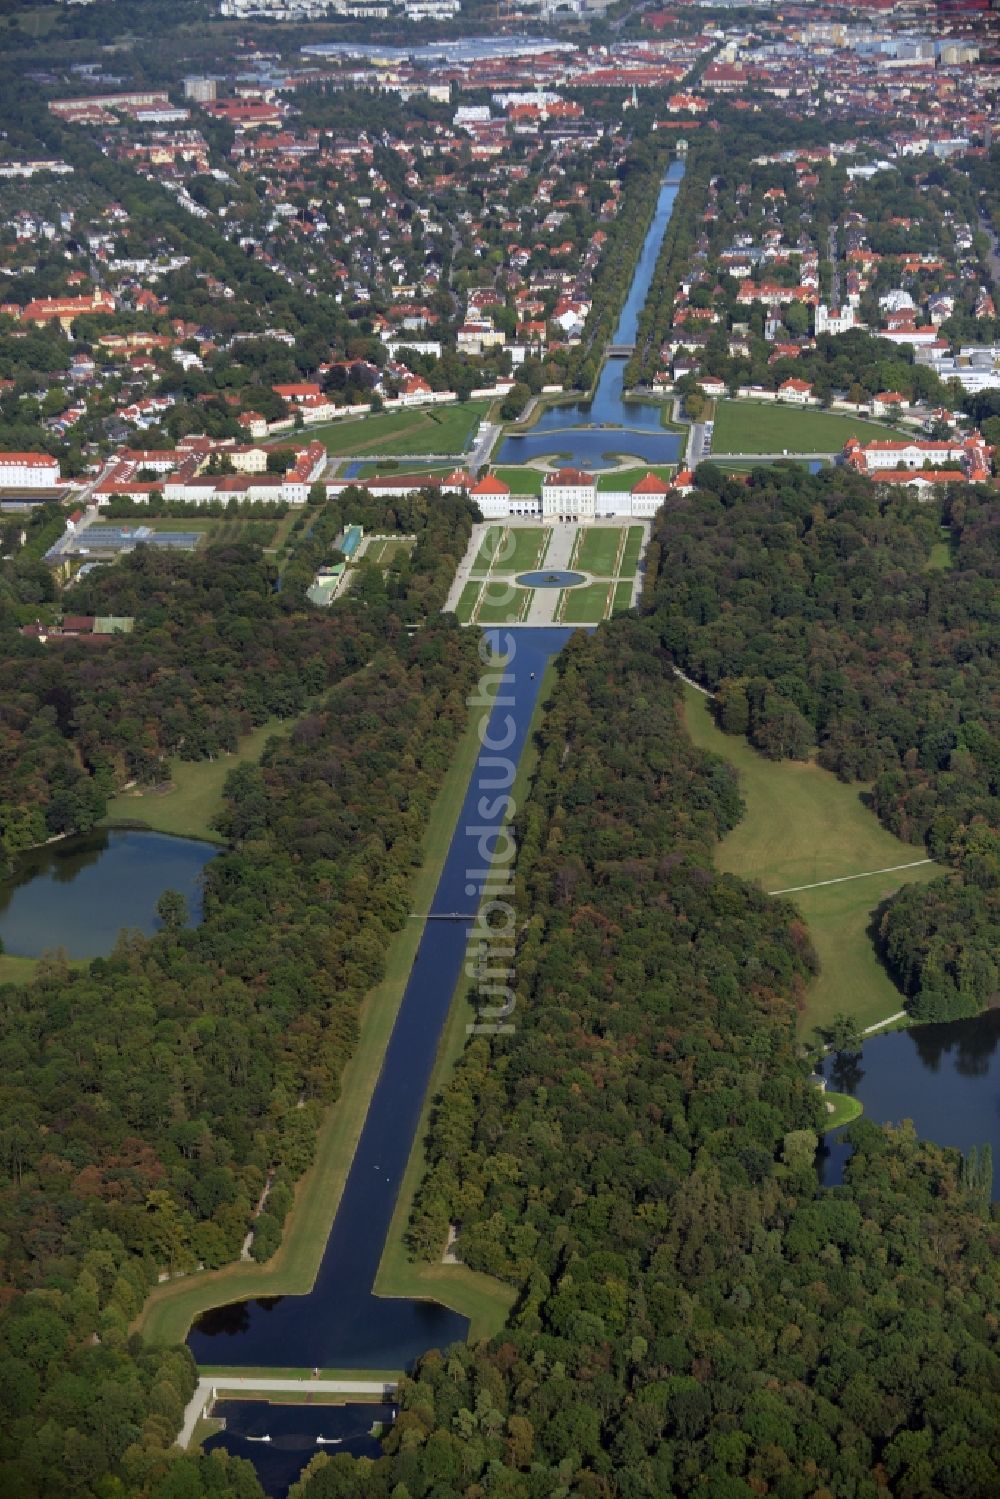 Luftaufnahme München - Gebäude und Schlosspark des Schloß Nymphenburg im Stadtteil Neuhausen-Nymphenburg in München im Bundesland Bayern